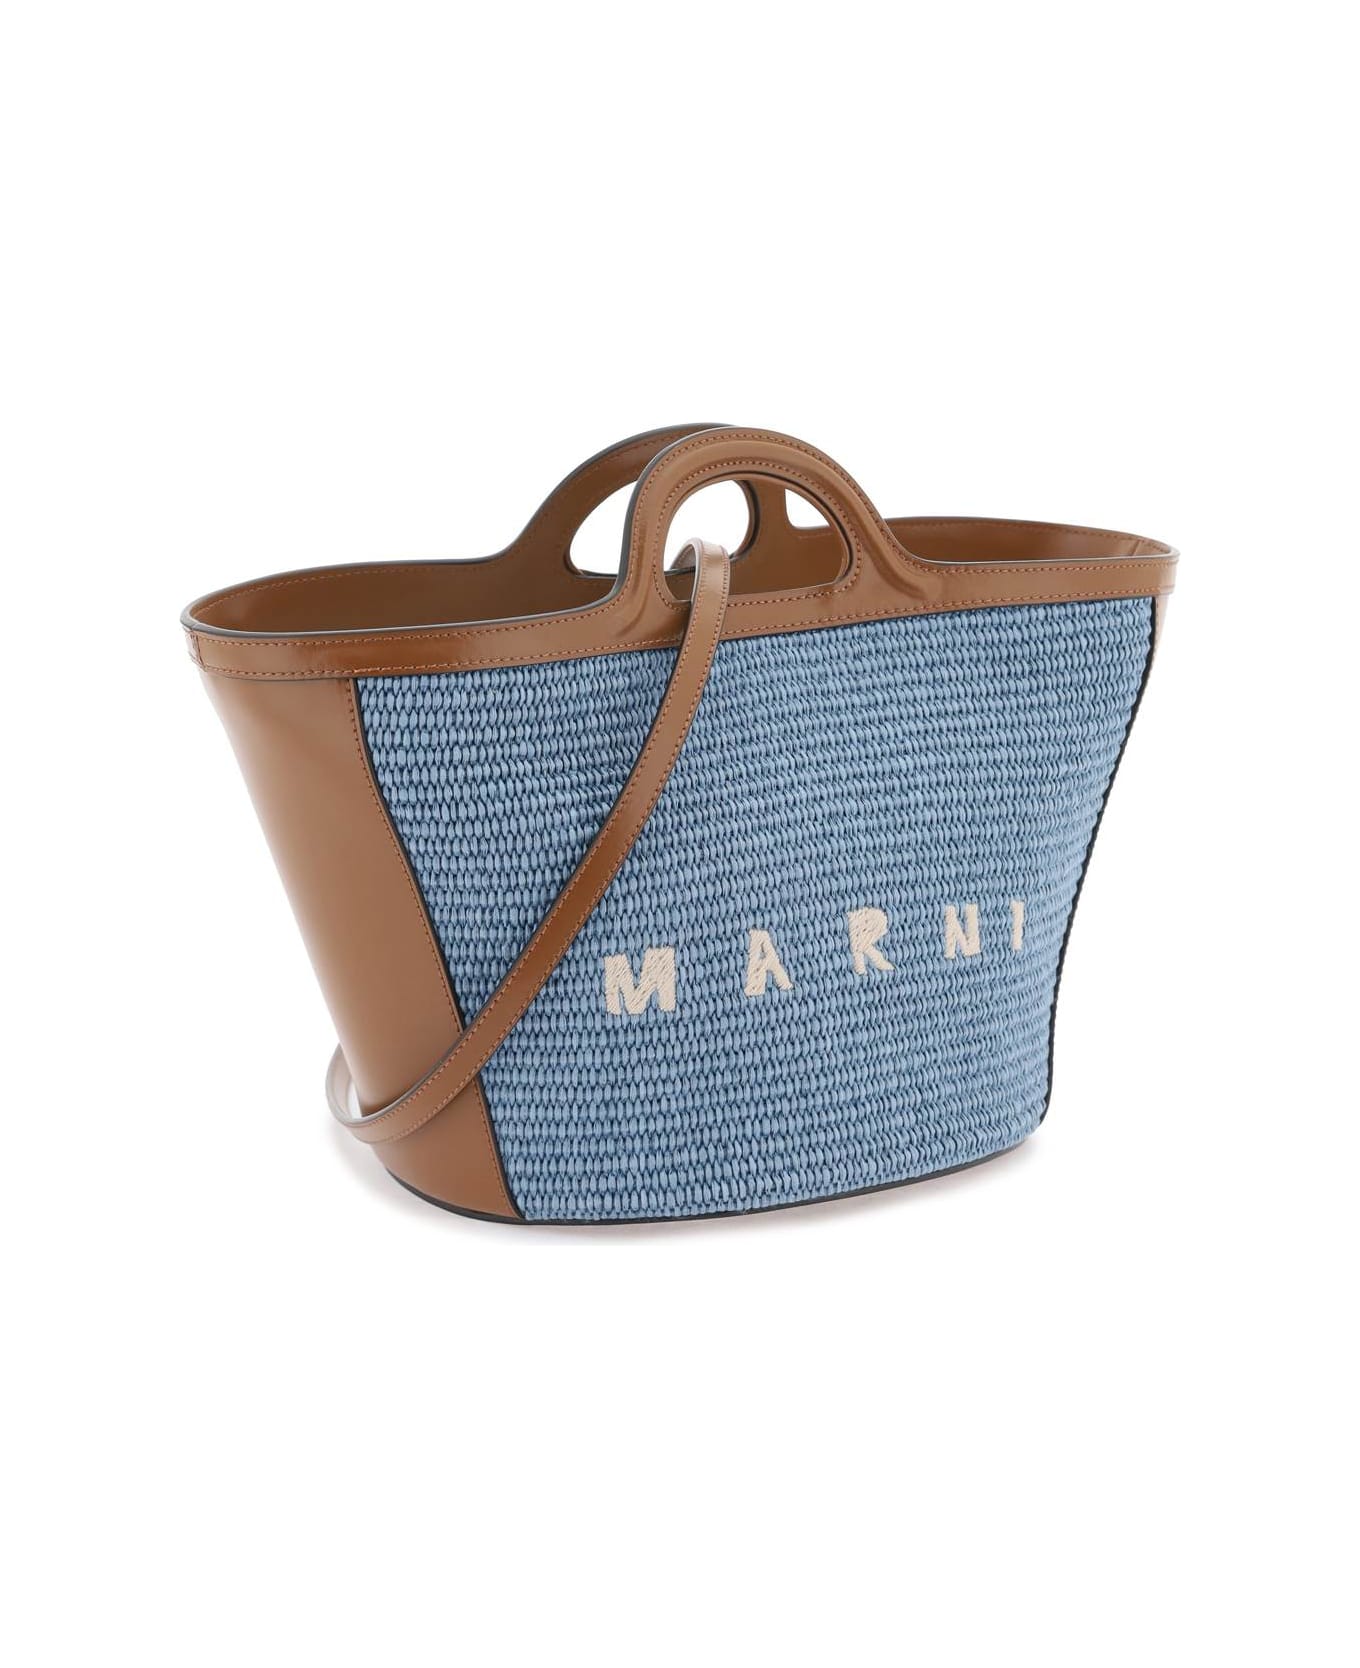 Marni Tropicalia Small Handbag - OPAL MOCA (Brown)